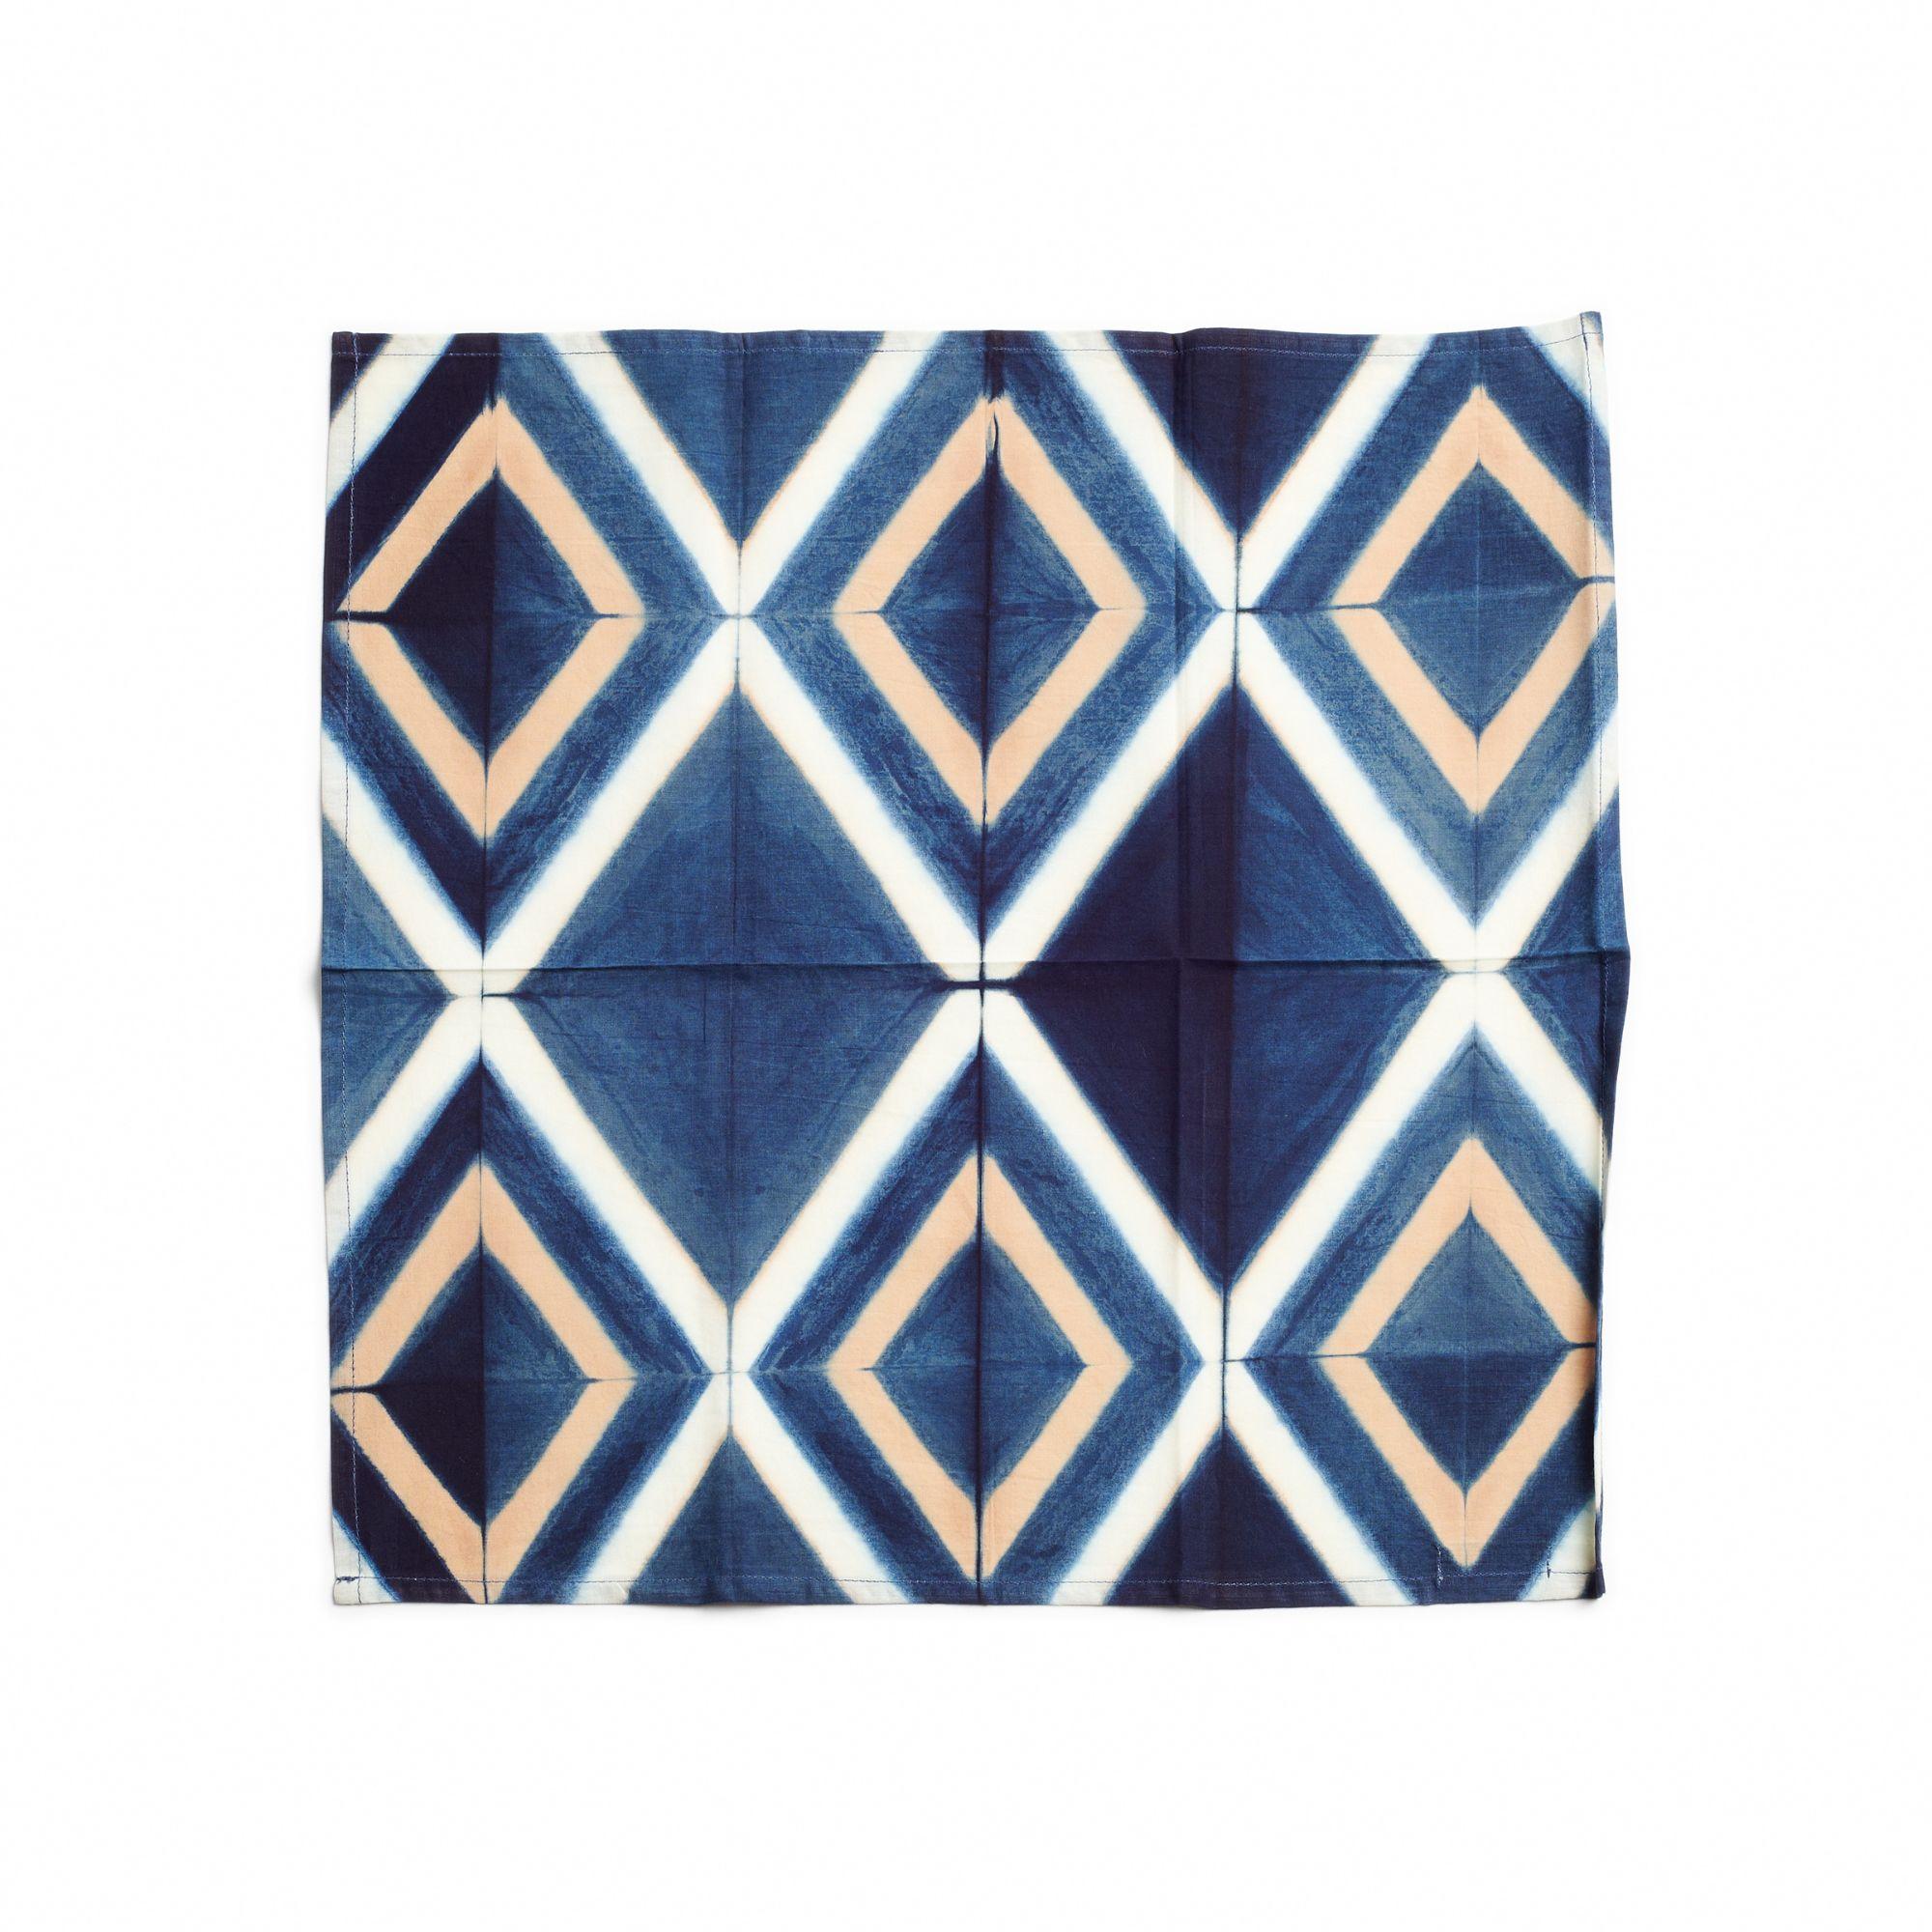 Tisa  La serviette de table est une serviette artisanale unique. Créés de manière artistique et éthique par des artisans en Inde selon la technique de la teinture à la pince, en utilisant uniquement des teintures naturelles pures. Il s'agit d'une